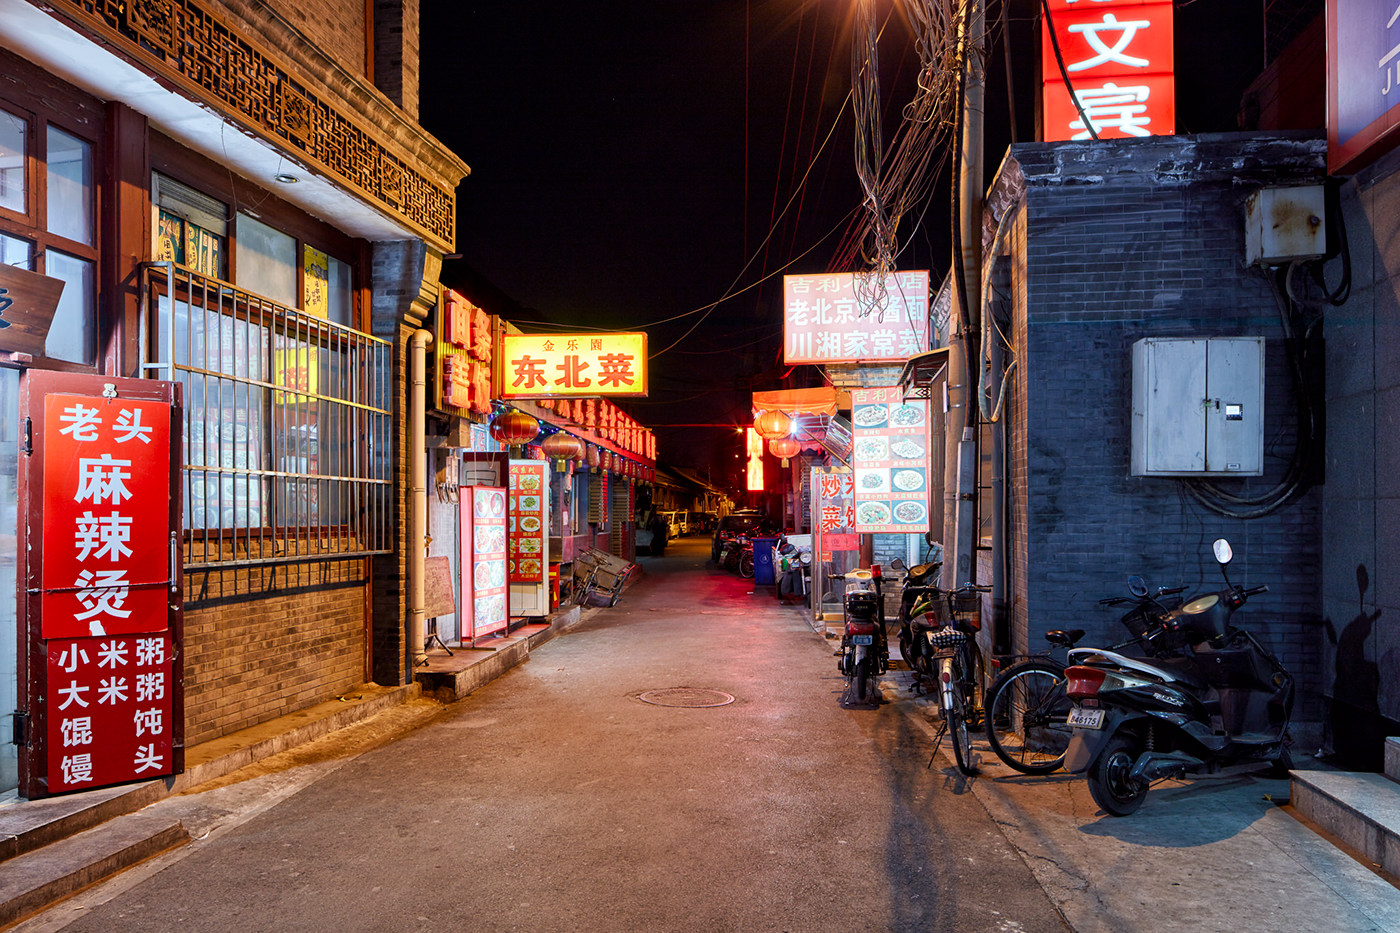 Hutong china beijing pechino night Street lights nightphotography cityscape Urban